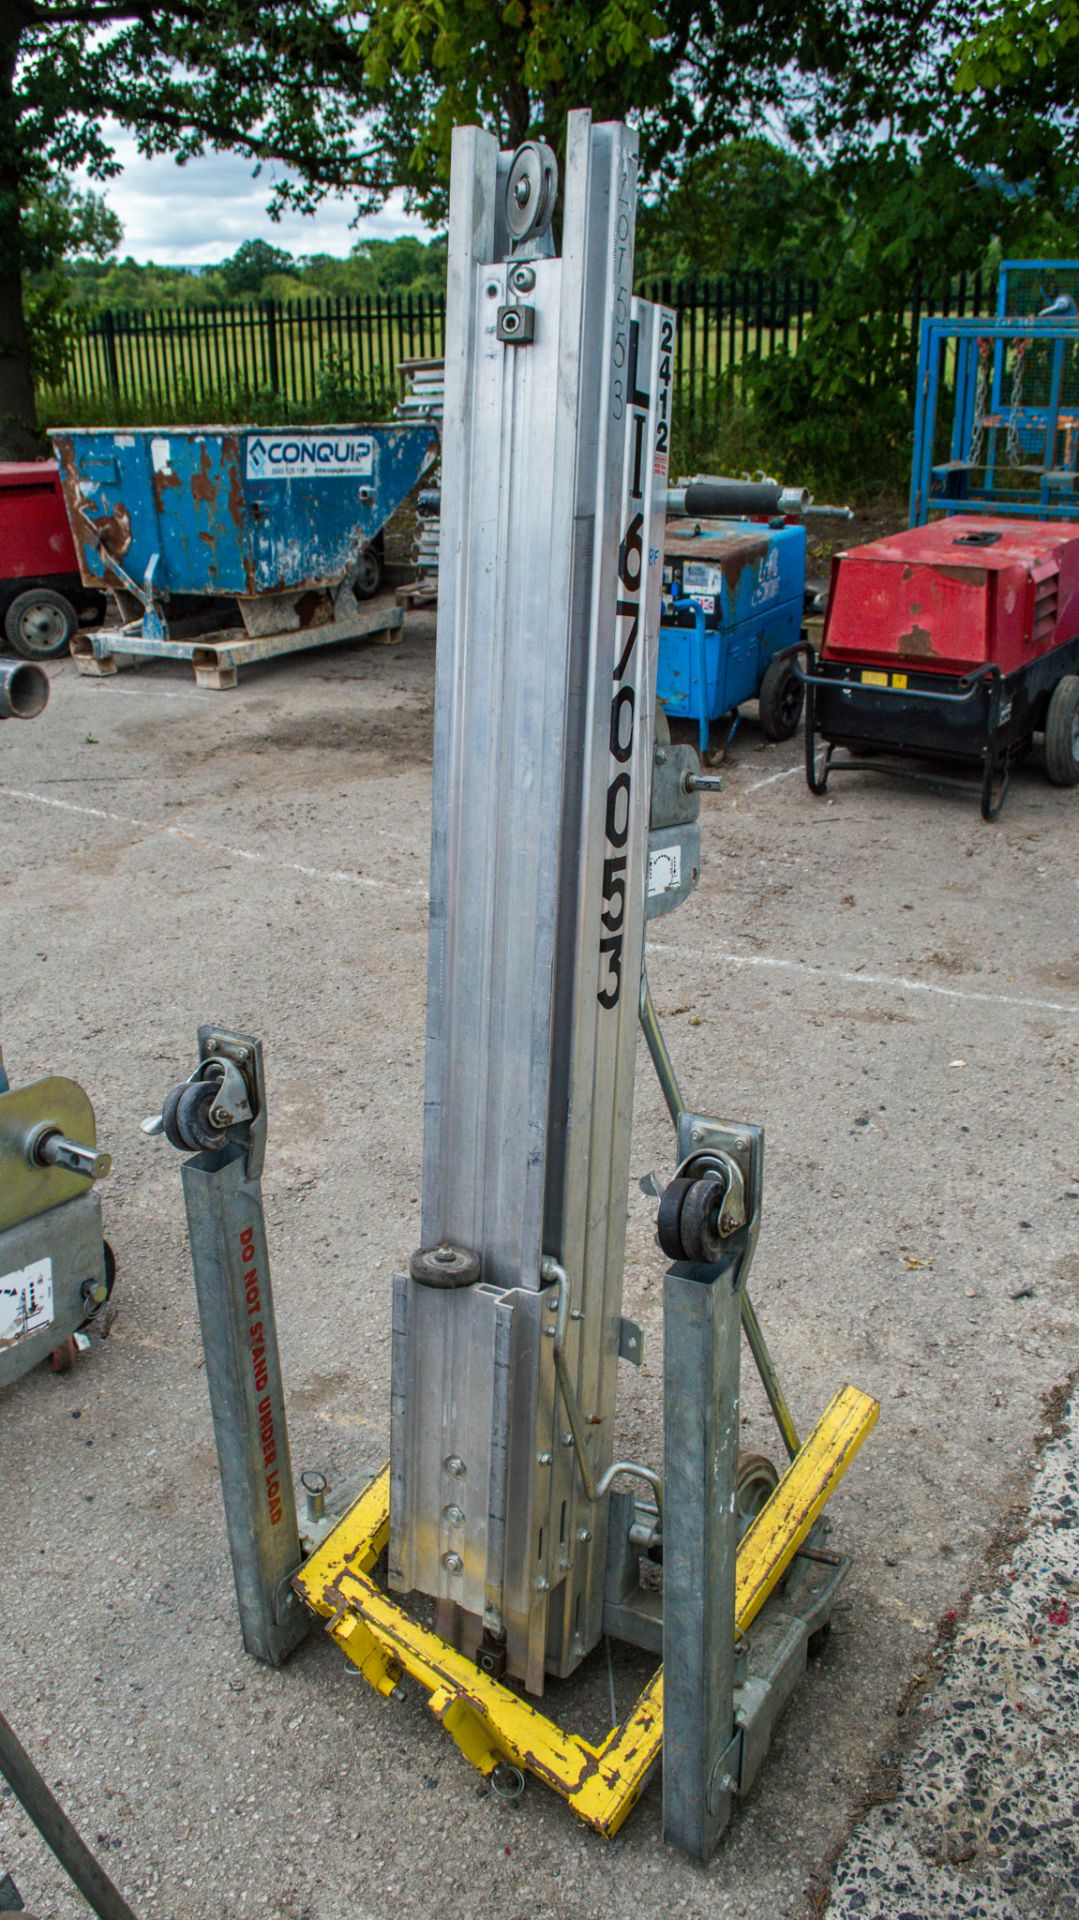 Sumner 2412 manual hoist c/w forks Weight: 90 kg HS Code: 8428399000 Origin: US